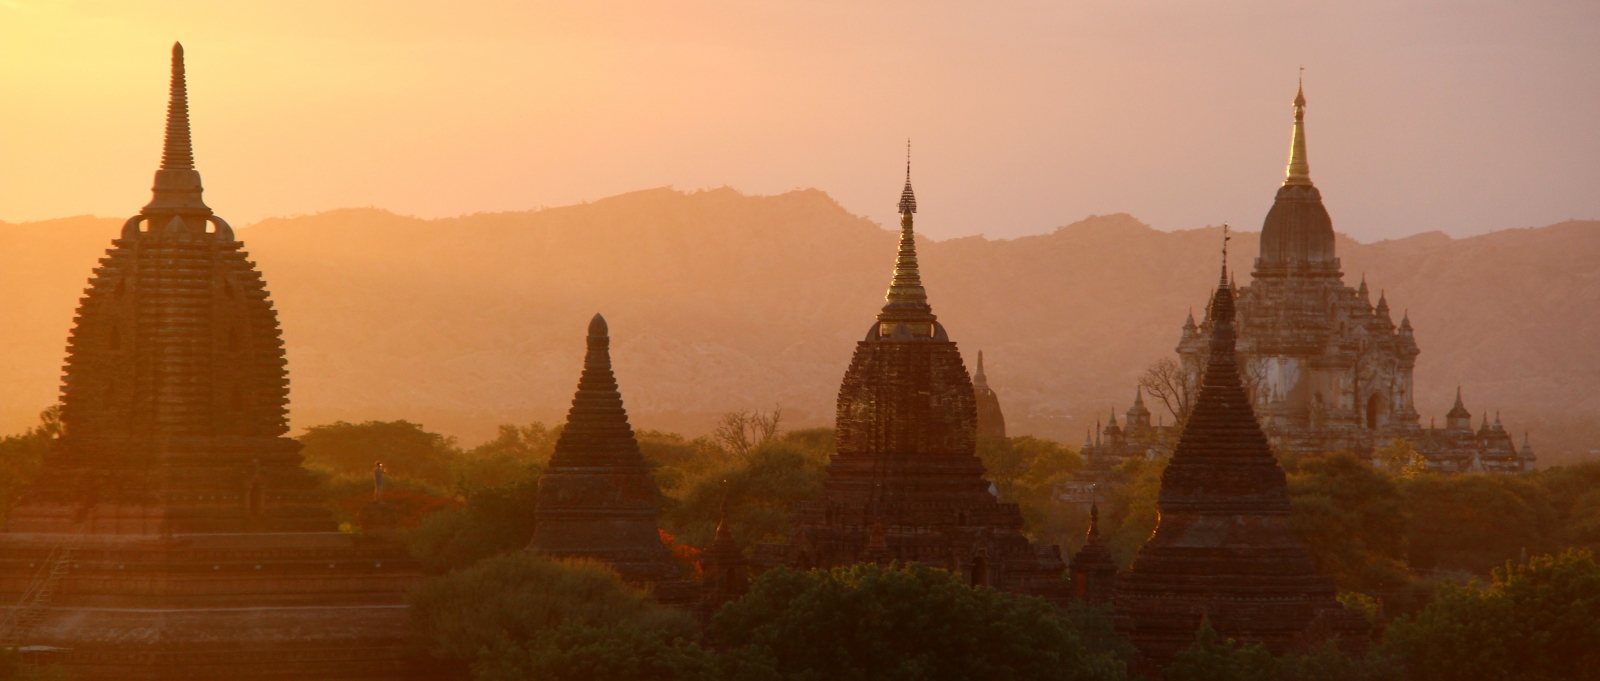 uitzicht van tempels van Bagan onder een oranjekleurige zonsondergang